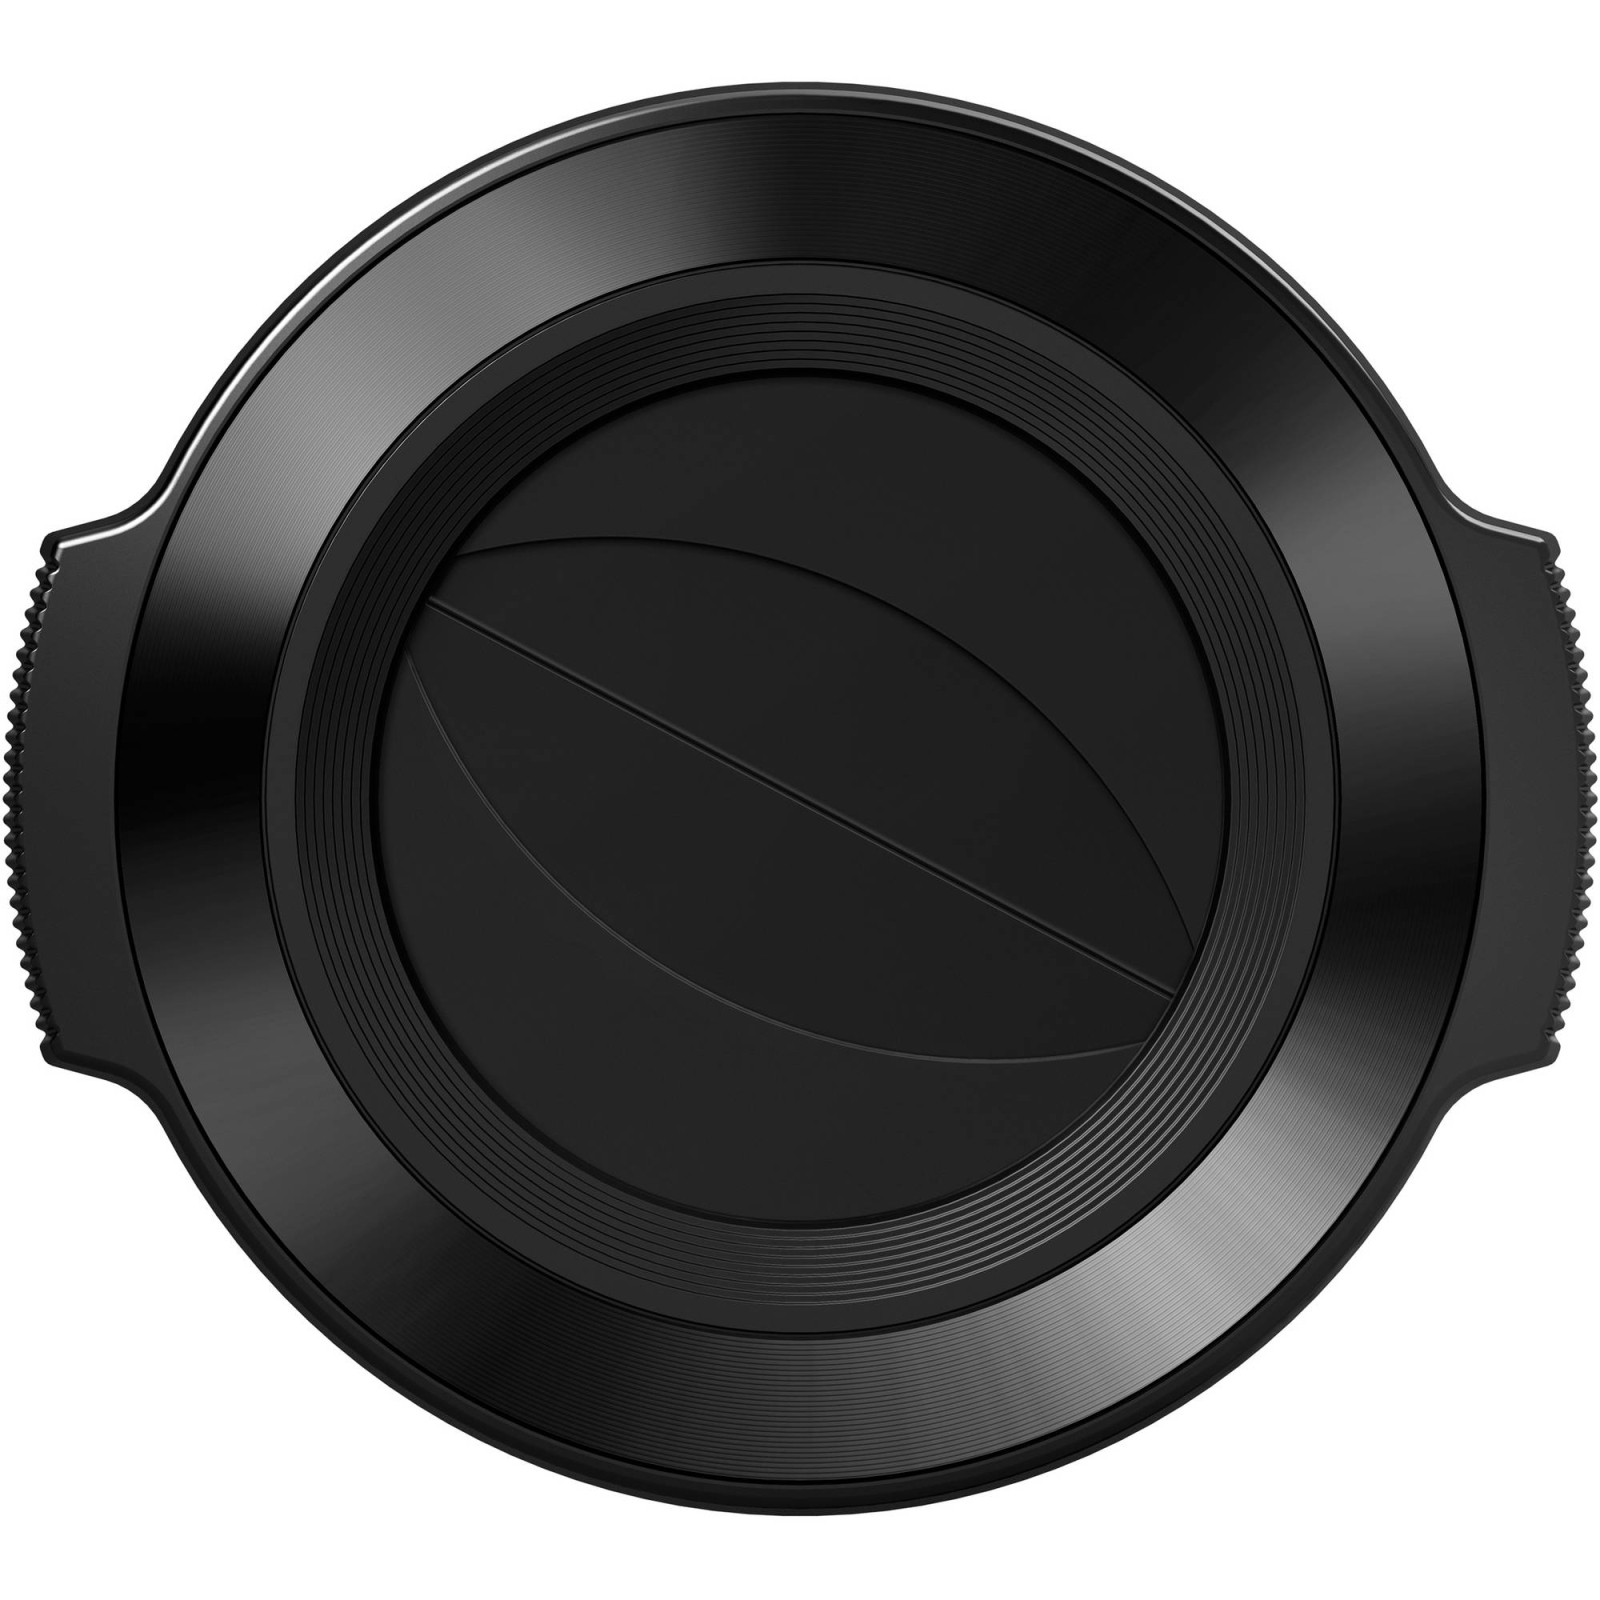 Кришка об'єктива Olympus LC-37C Automatic Lens Cap 37mm Black (V325373BW000) зображення 2